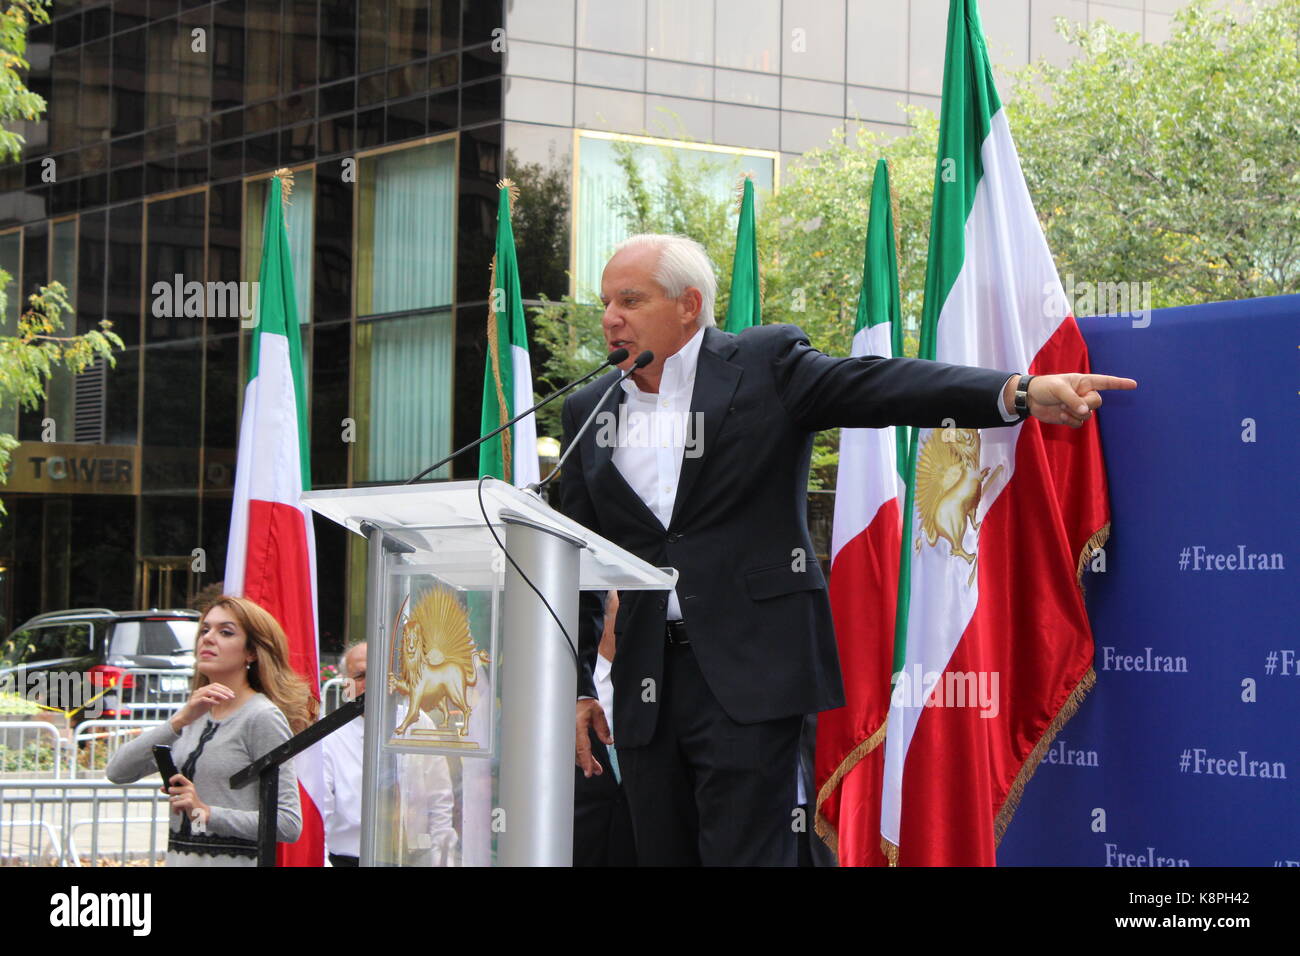 Robert Torricelli, New York, UNITED STATES 20/09/2017 - Rallye des milliers de l'autre côté du siège de l'Organisation des Nations unies pour protester contre le président iranien Hassan Rohani et soutenir le chef de l'opposition iranienne Maryam Rajavi. Ils ont cité 11 000 manifestations en Iran cette année et a appelé les États-Unis, d'adopter une nouvelle politique de l'Iran qui côté avec le peuple iranien dans leur recherche de la démocratie, des droits de l'homme, et non-nucléaire de l'Iran, qui exige un changement de régime par des iraniens. Elles développent plus de rue artistique jouer, symbolisant les 11 000 protestations à travers l'Iran, qui parle au peuple iranien Banque D'Images